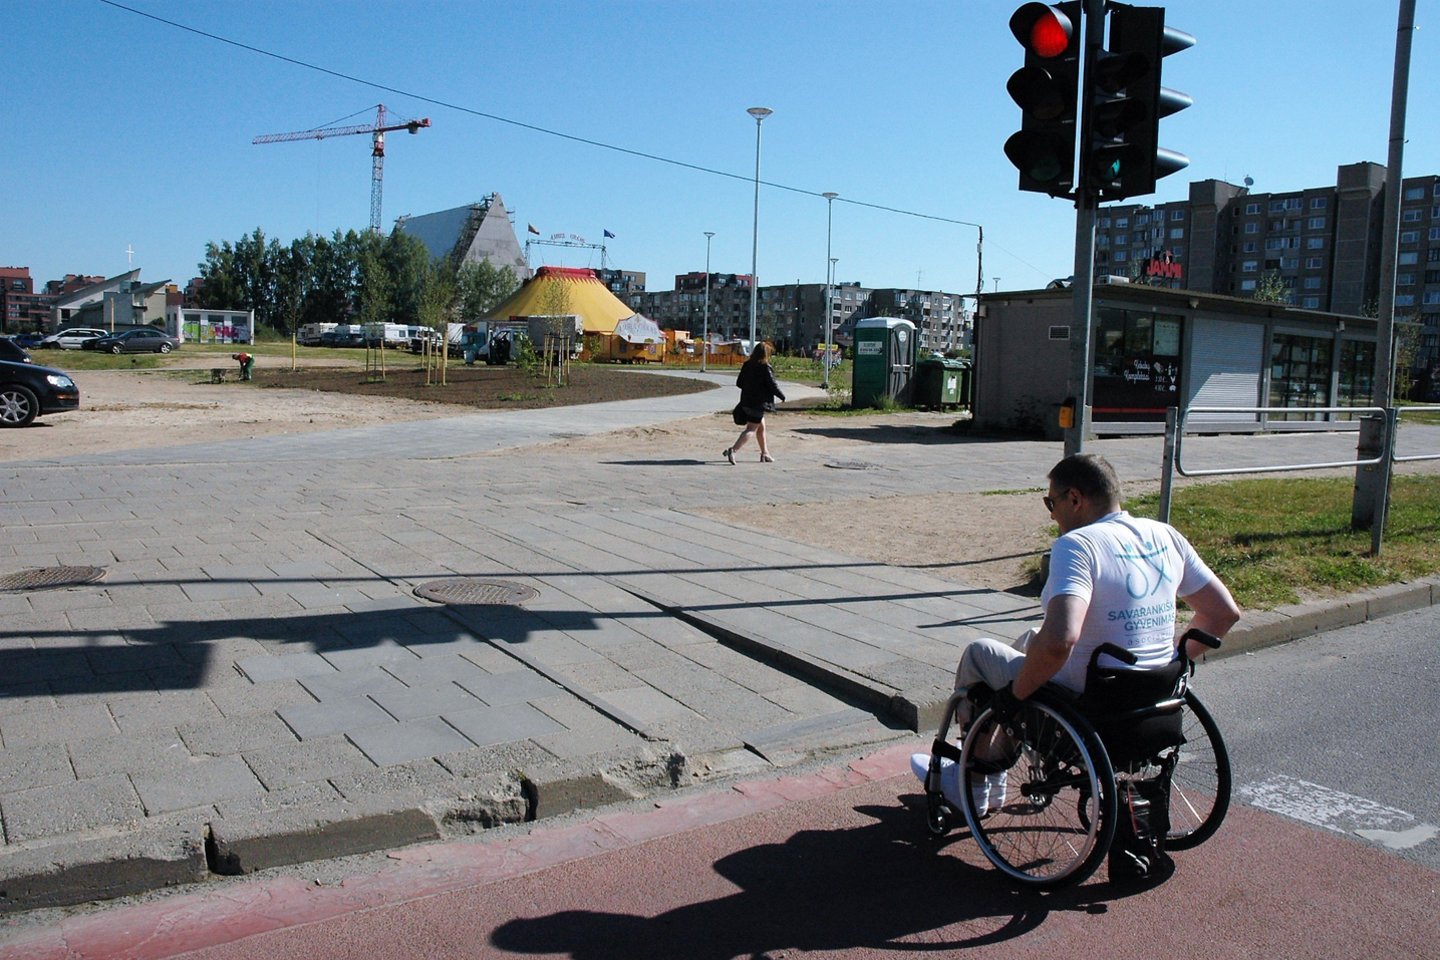  Neįgaliuosius vienijančių organizacijų atstovai konstatavo, kad Vilniaus miesto Pilaitės mikrorajonas, palyginti su kitais sostinės rajonais, neįgaliesiems pritaikyta neblogai, tačiau trūkumų vis dar apstu.<br> L.Jakubauskienės nuotr.